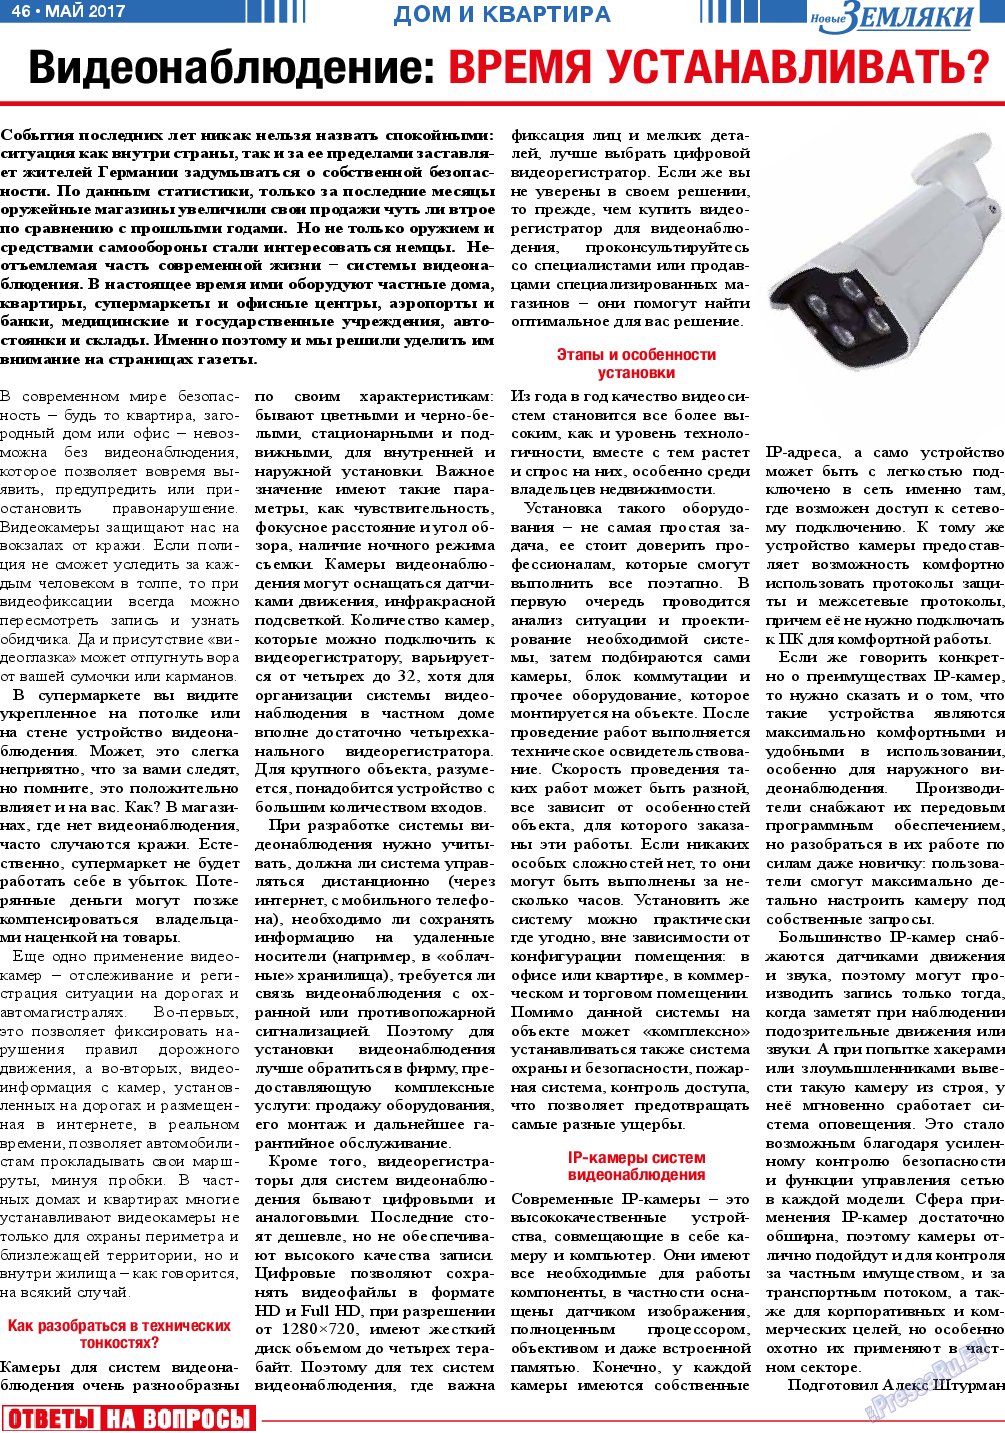 Новые Земляки, газета. 2017 №5 стр.46